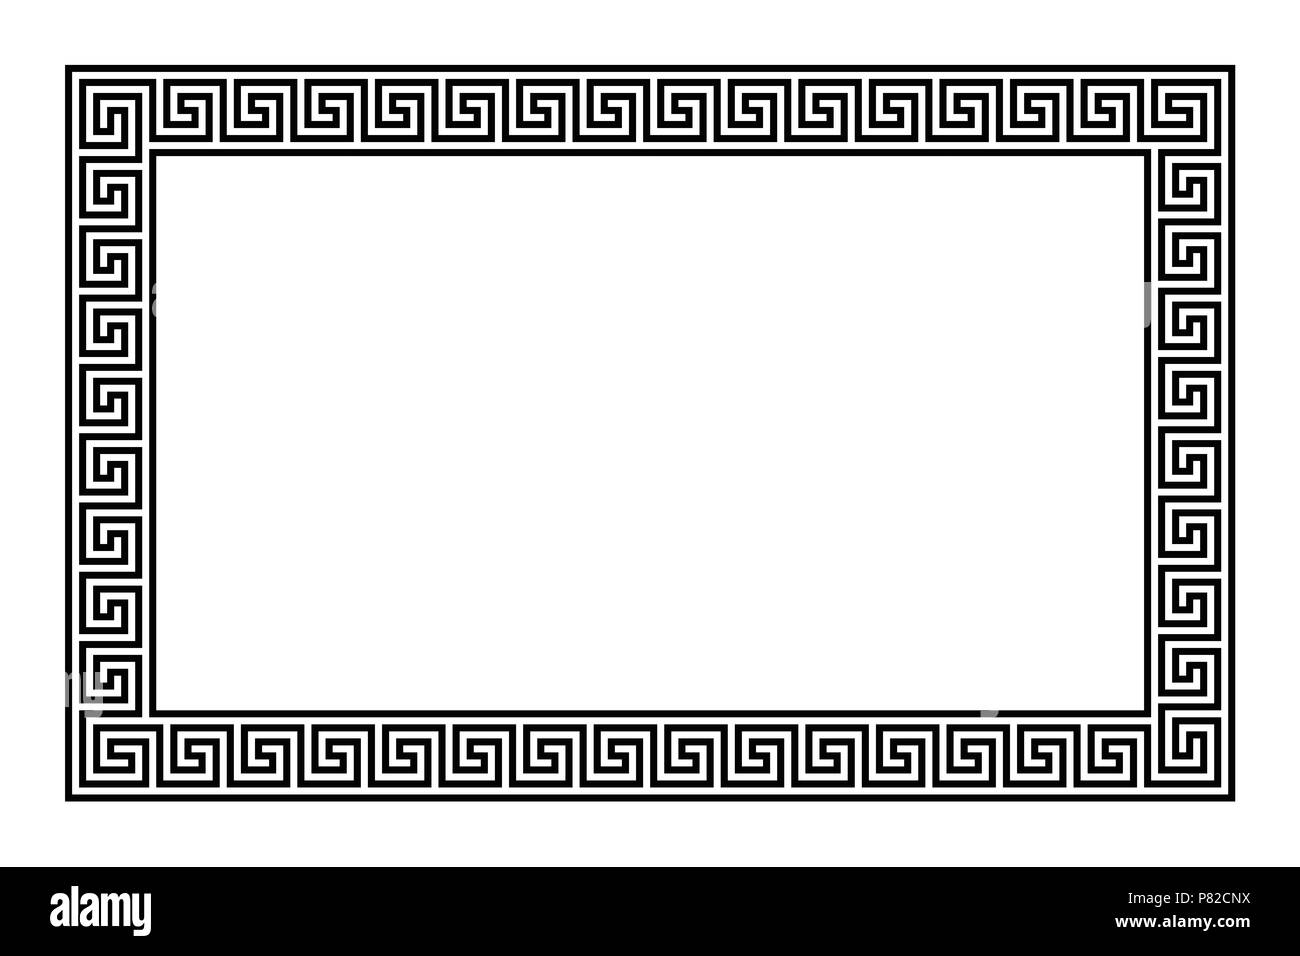 Rechteck Frame mit nahtloser Mäander Muster. Meandros, eine dekorative Grenze, von der kontinuierlichen Linien gebaut, in die ein wiederholtes Motiv geprägt. Stockfoto